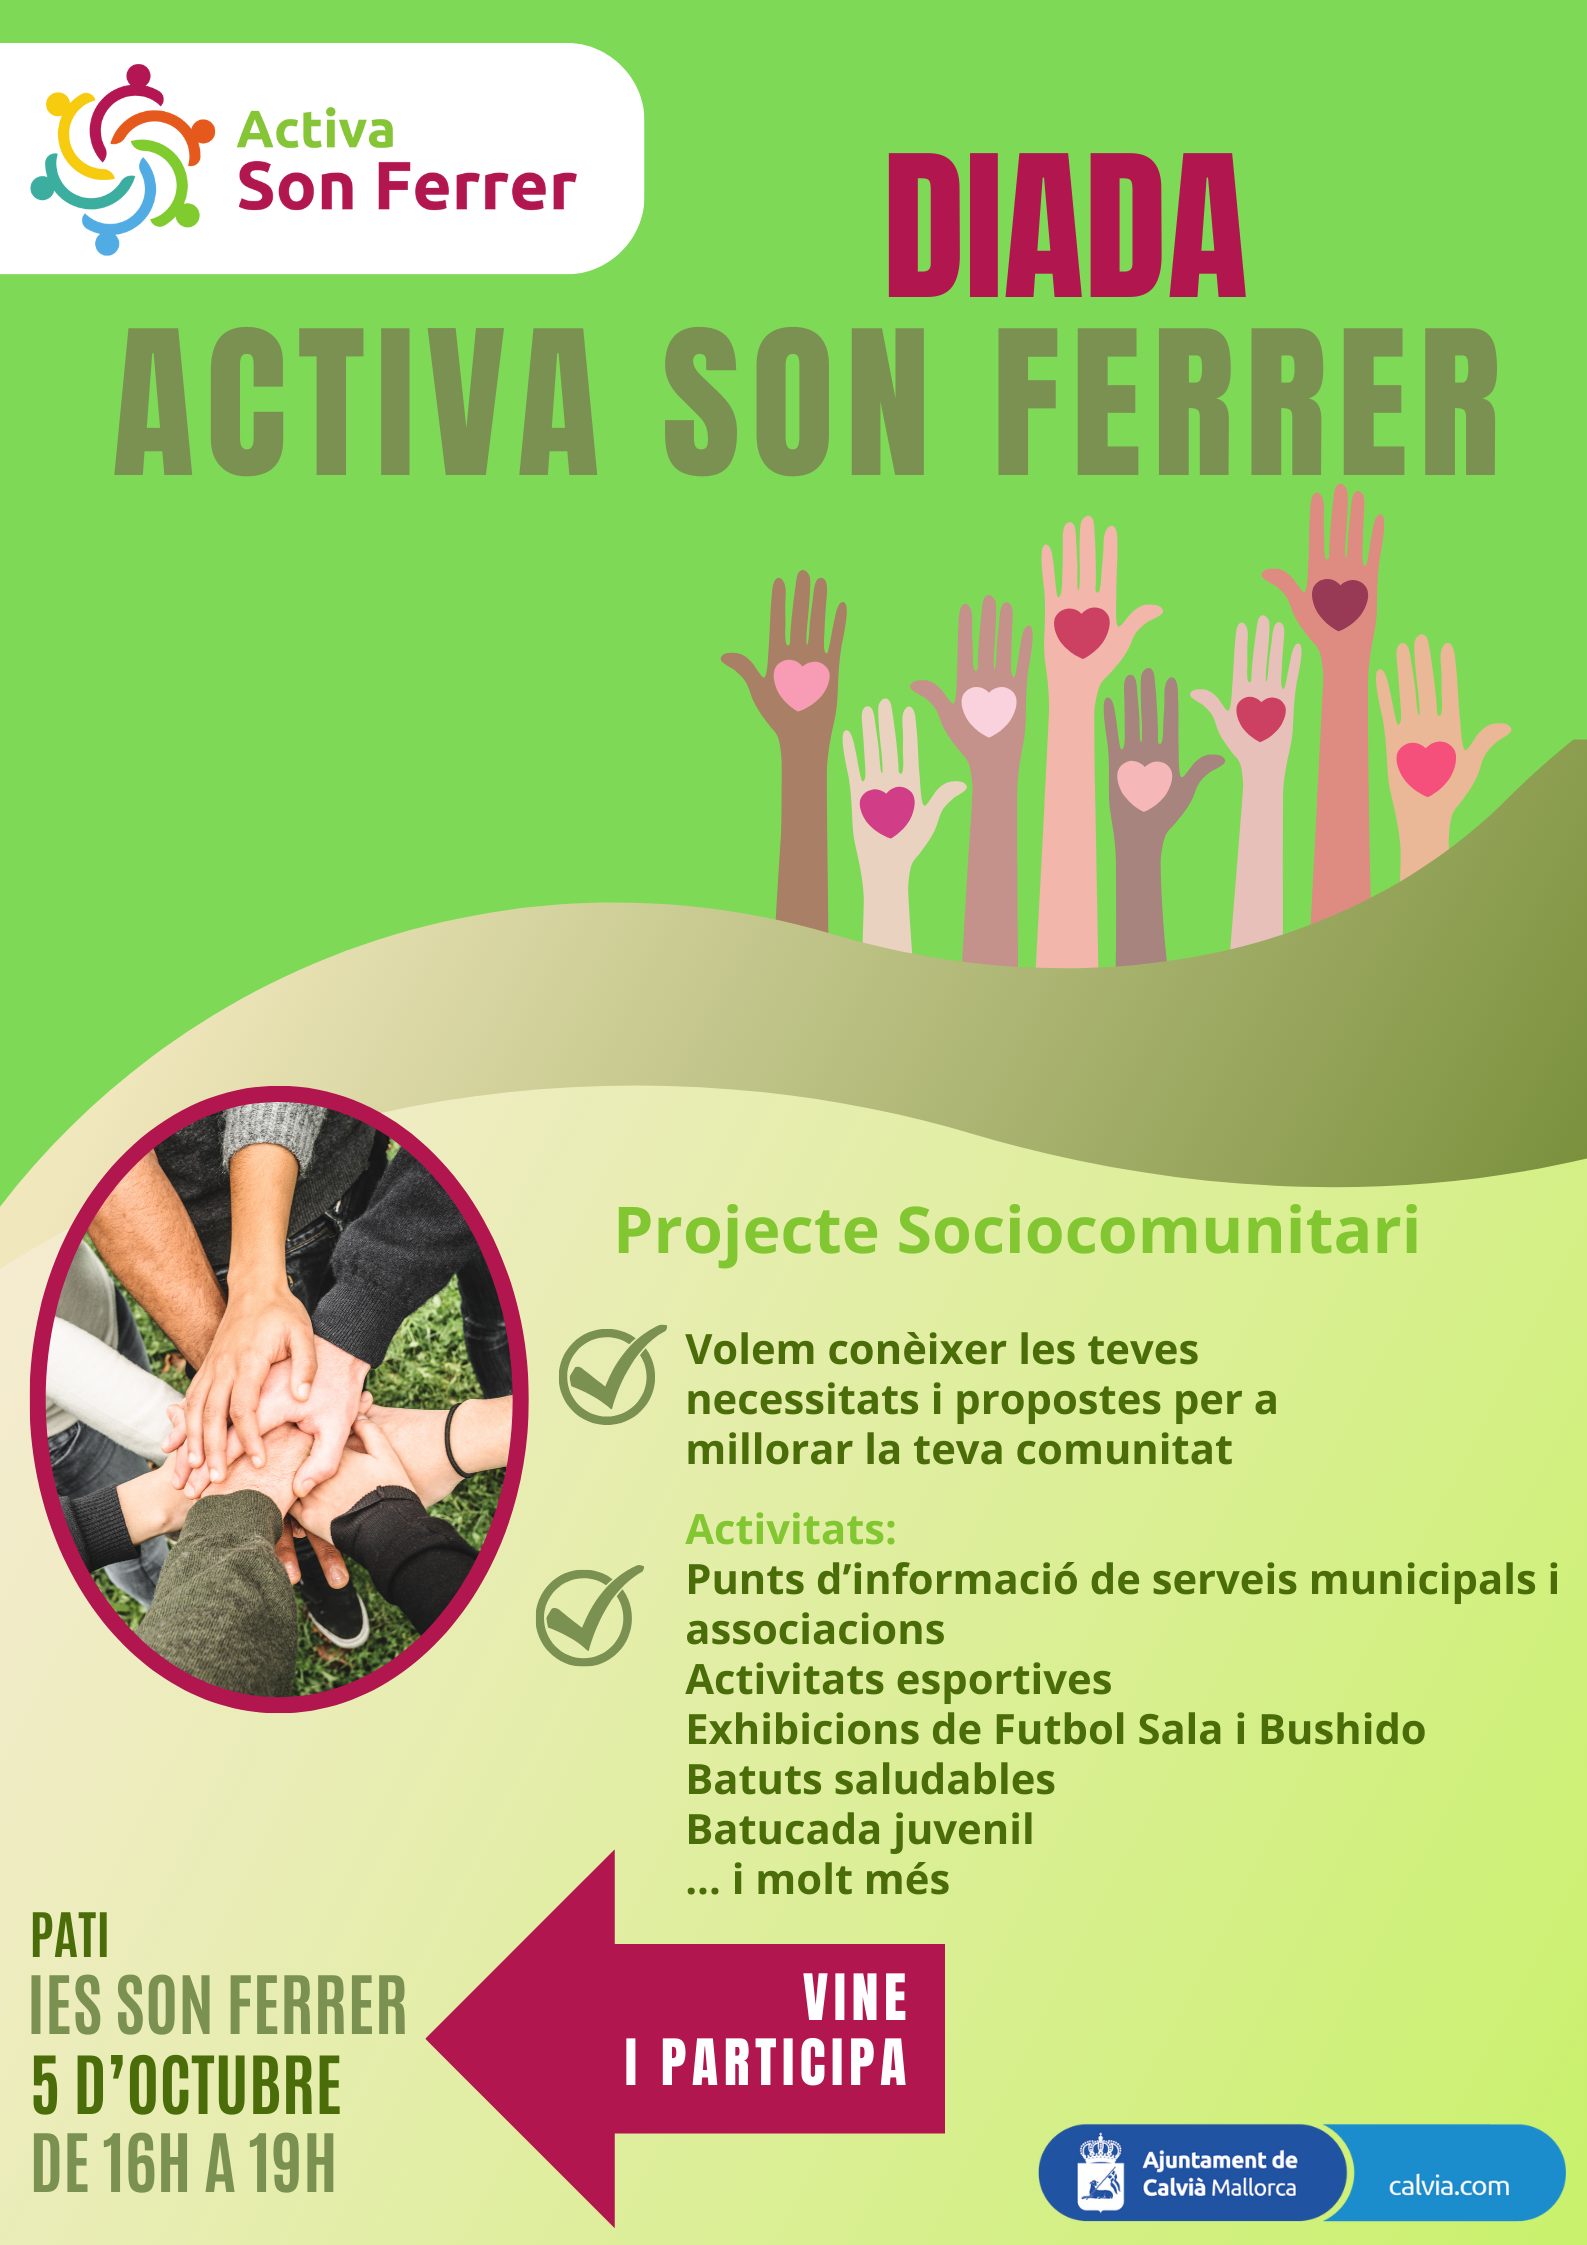 Calvià organitza una diada per implicar als veïnats al projecte "Activa Son Ferrer"